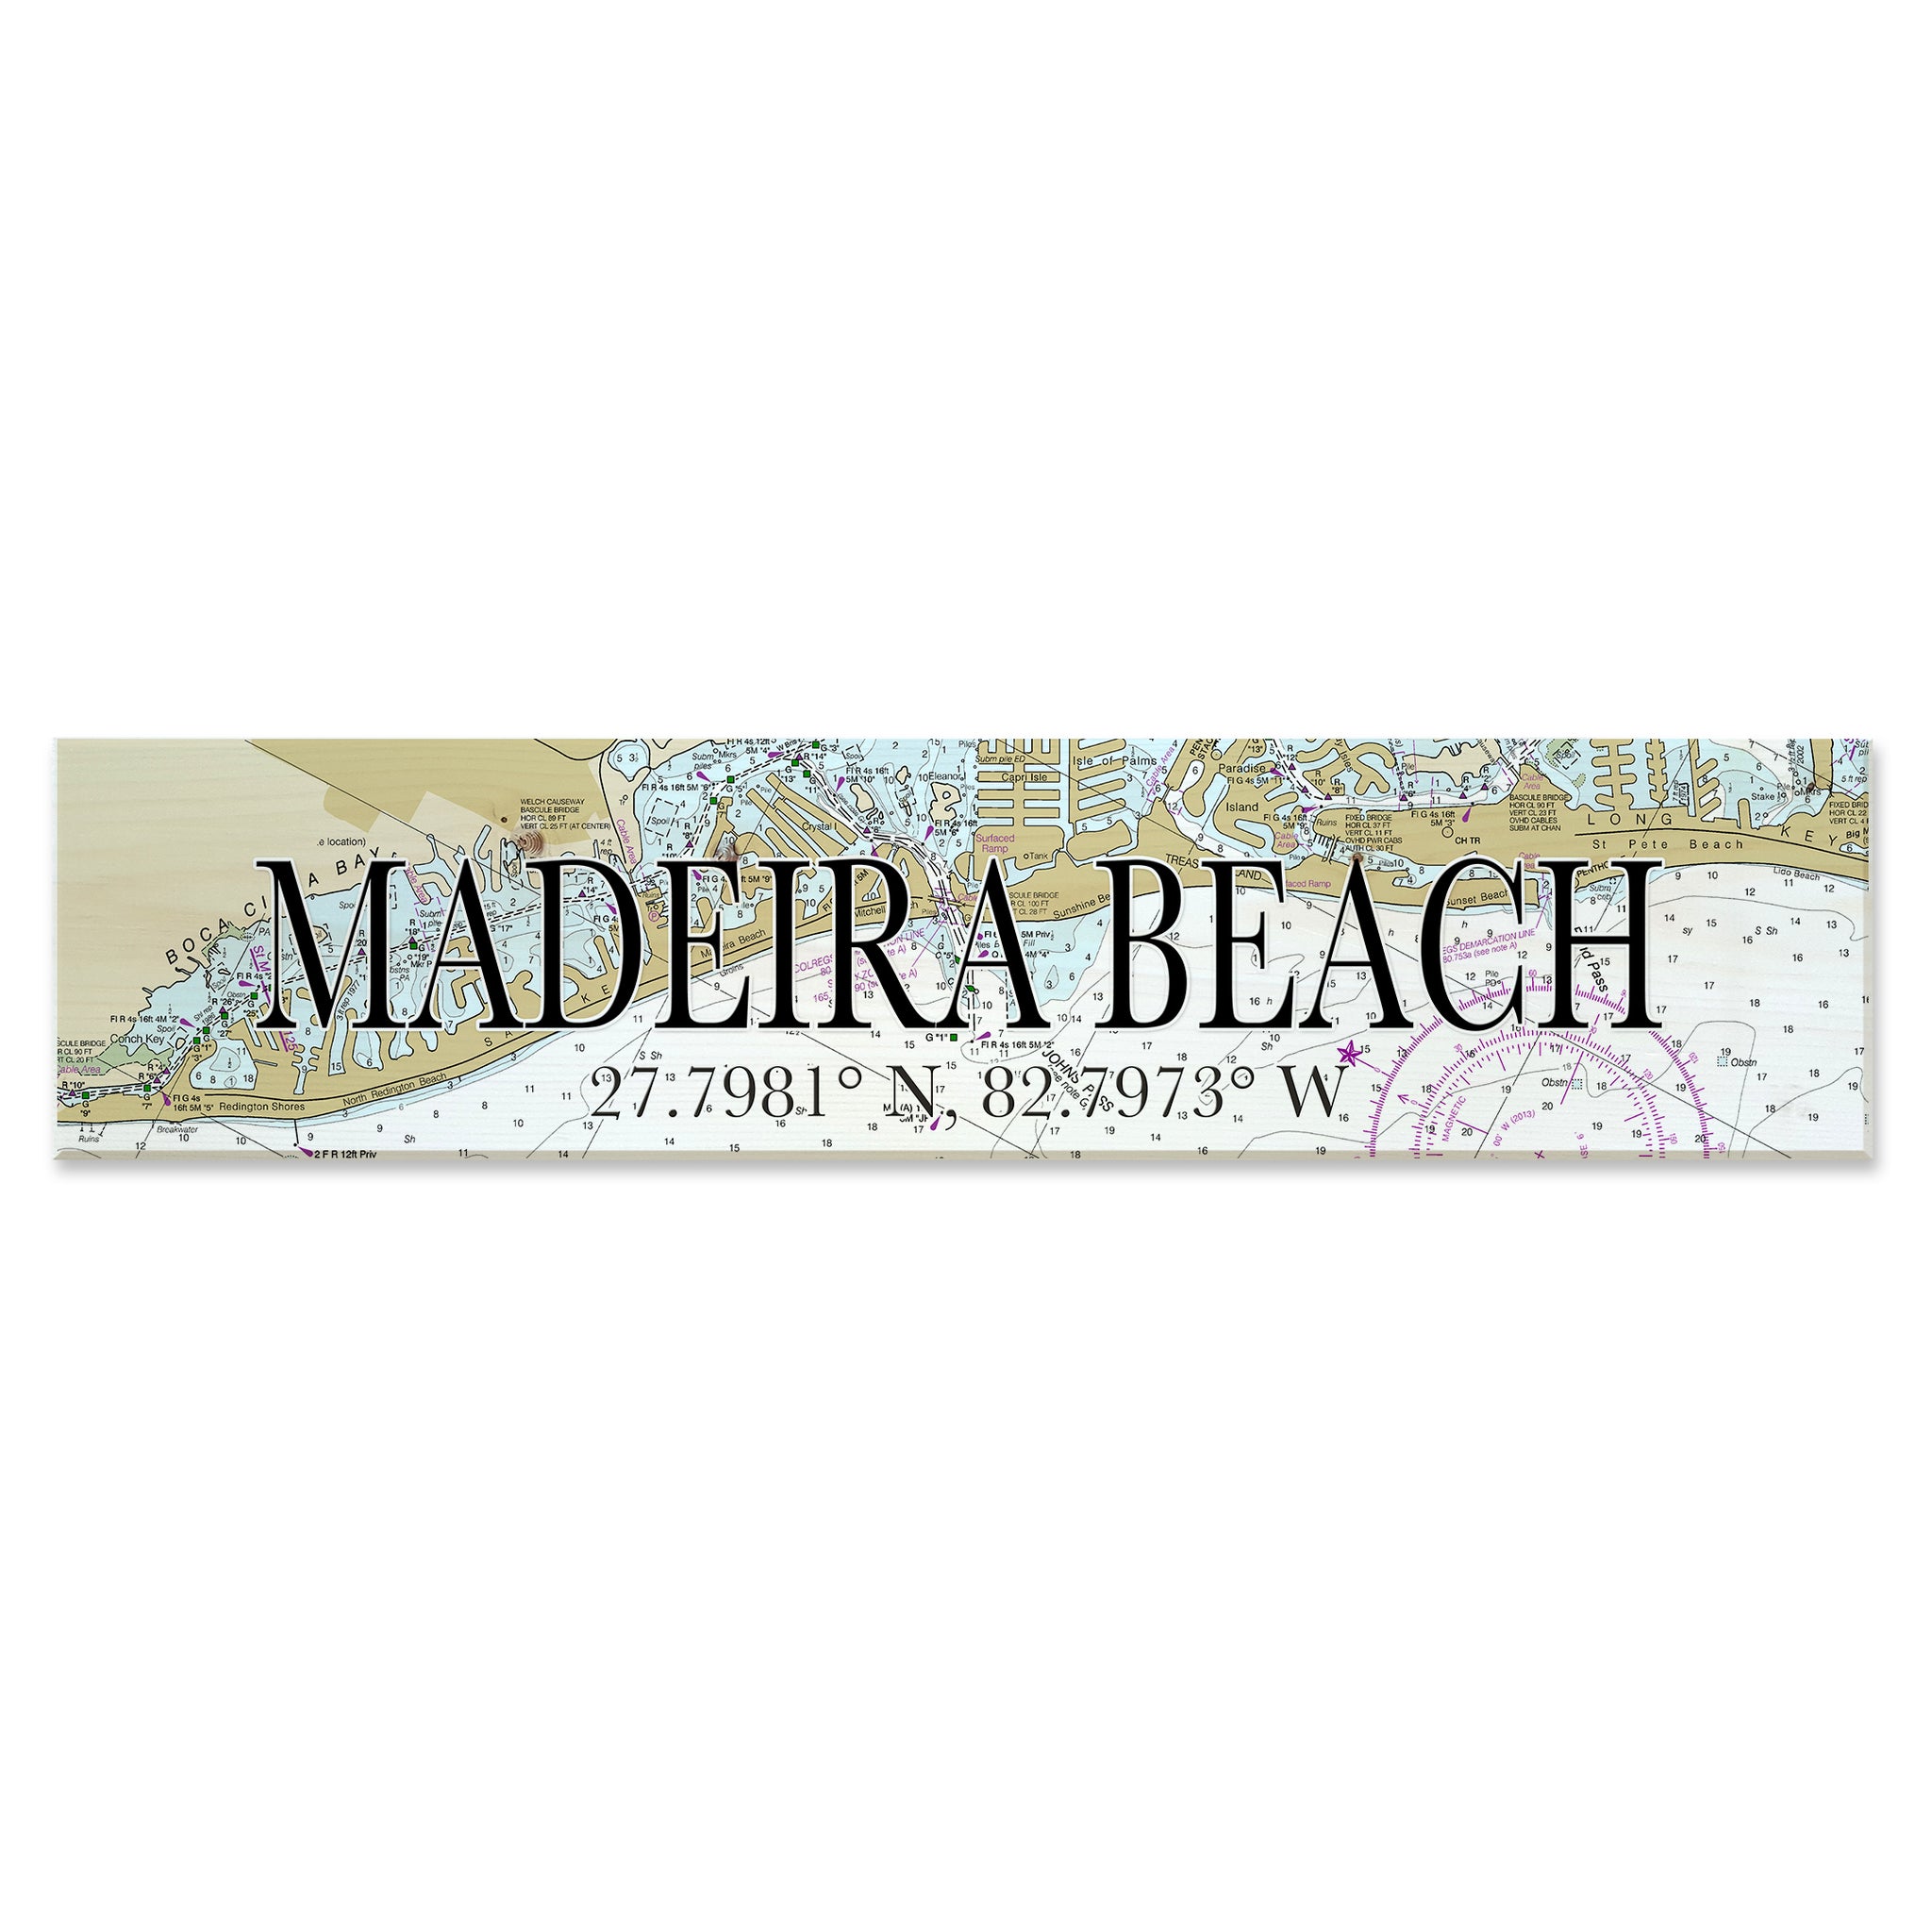 Madeira Beach,  FL Coordinate Sign